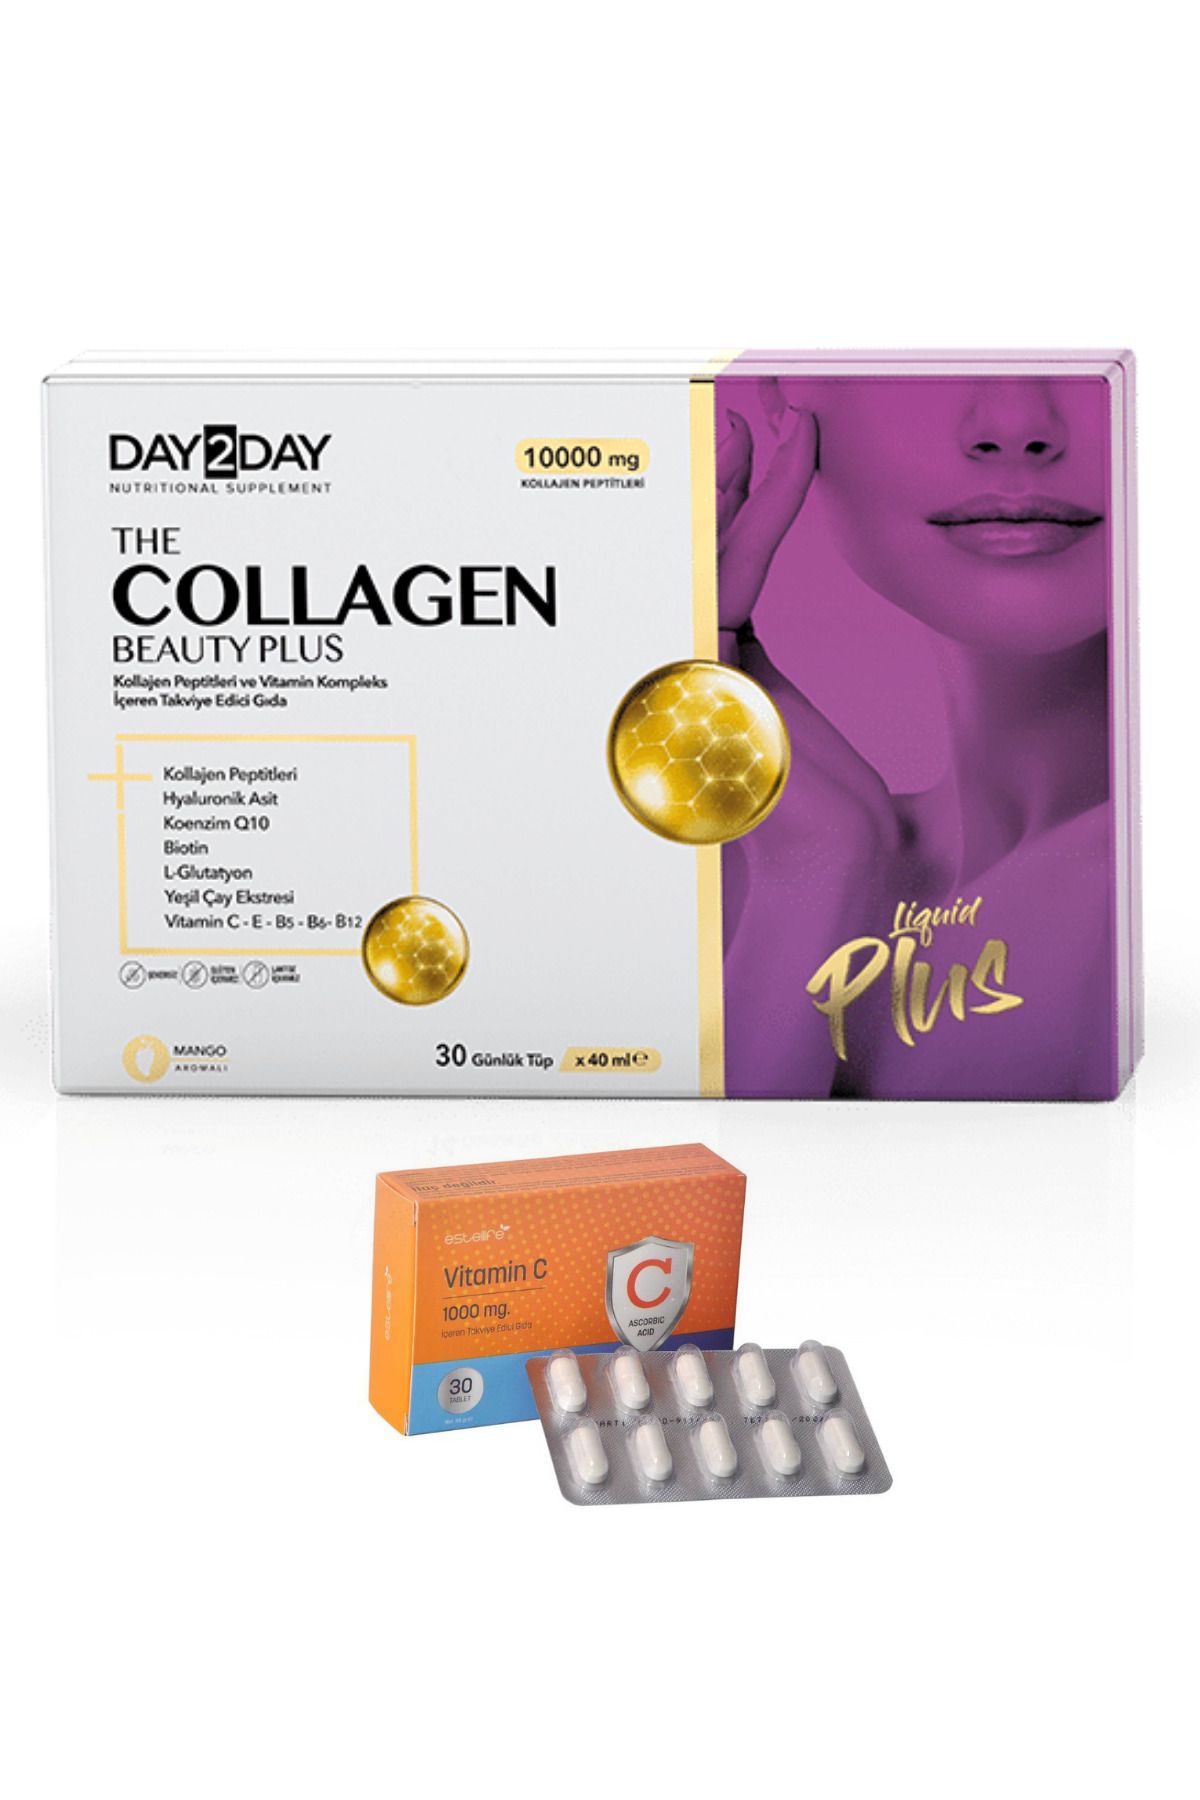 DAY2DAY Collagen Beauty Plus 30 Günlük Tüp Estellife C Vitamini 1000 mg